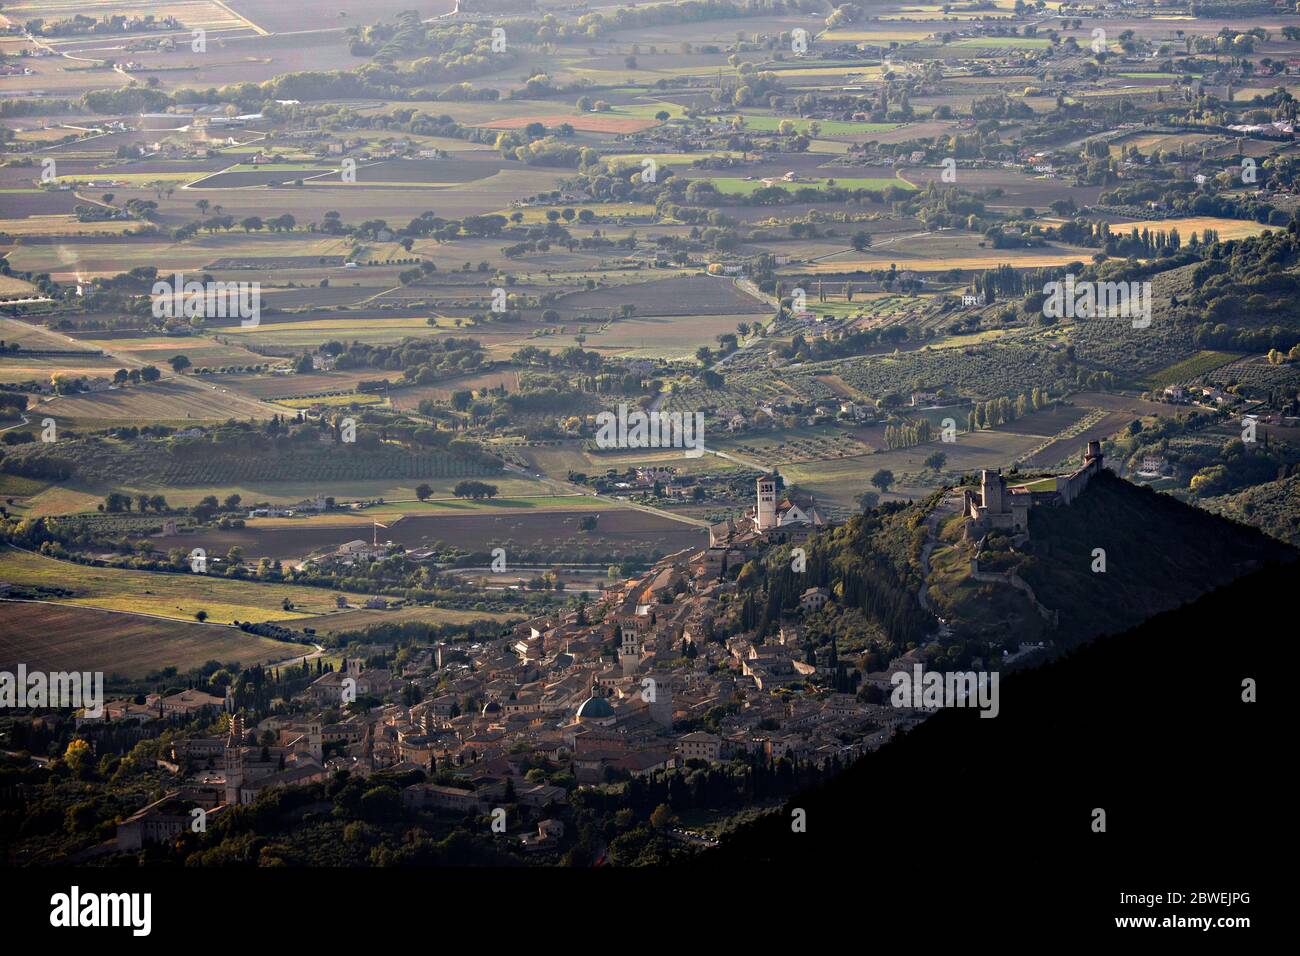 Assisi von oben gesehen, eingerahmt vom Berg Subasio, zeigt die ganze Ebene davor Stockfoto